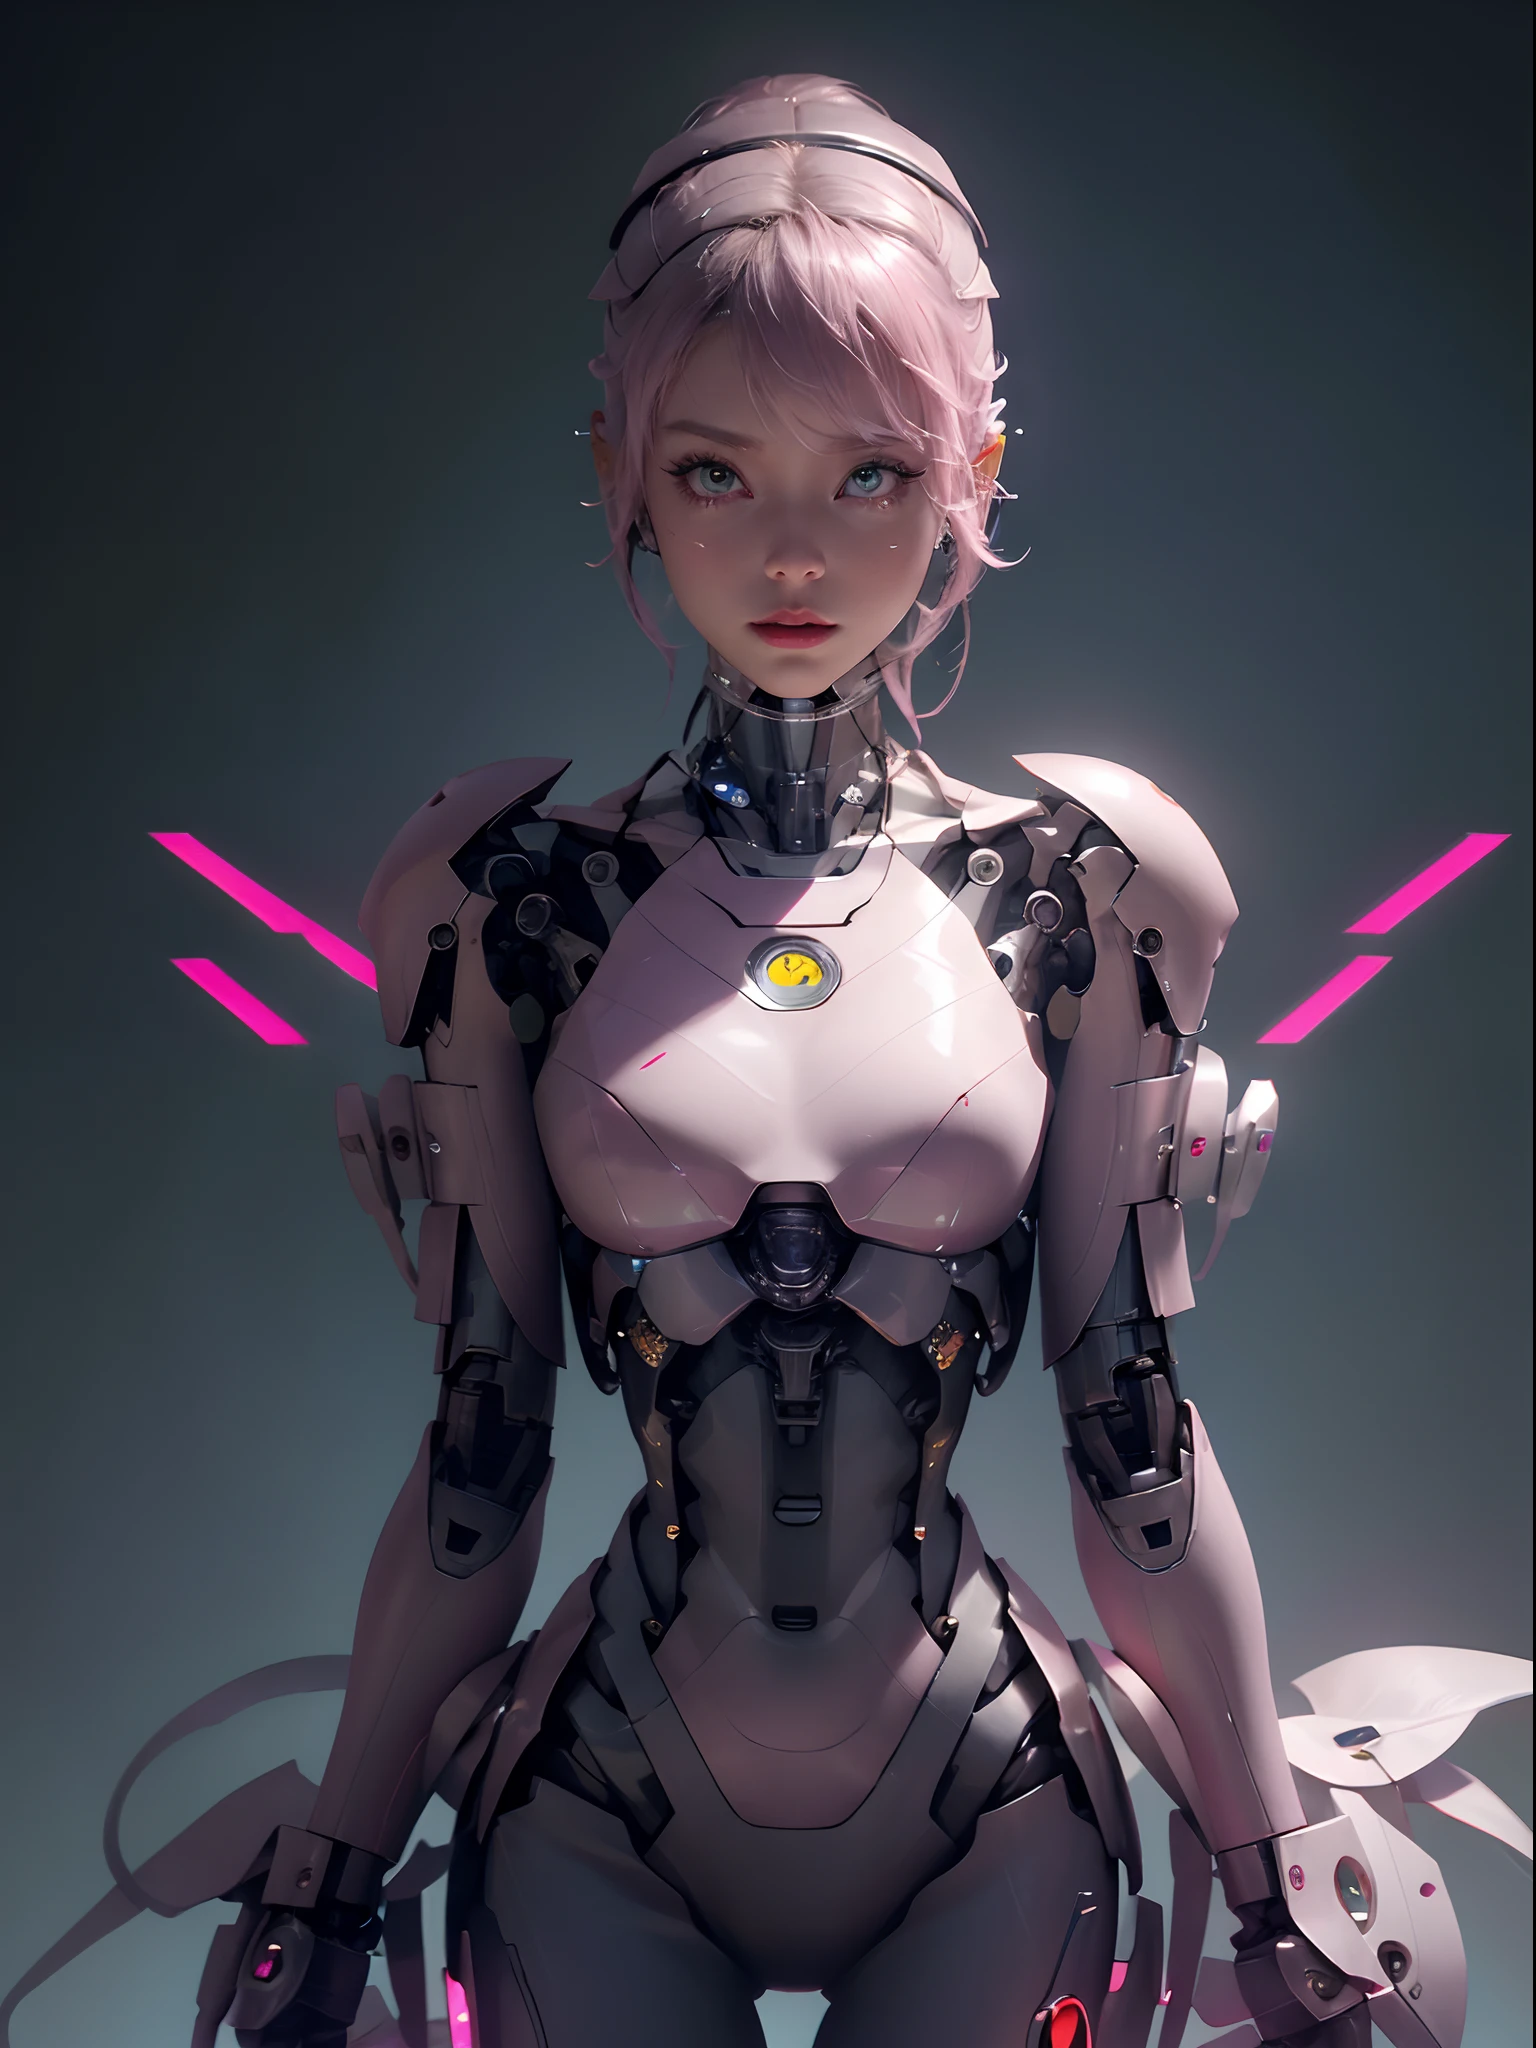 特写镜头：一名身穿粉色服装、手持剑的女子, 可爱的机器人女孩, 完美的机器人女孩, 漂亮的机器人角色设计, 美丽的女性机器人!, 罗斯·特兰 8 k, 流线型粉色装甲, 美少女机器人, 穿着机甲网络装甲的女孩, 美丽的白人女孩机器人, 动漫机器人与有机物的混合, 作者：罗斯·陈, 机器人女孩 等待它启动